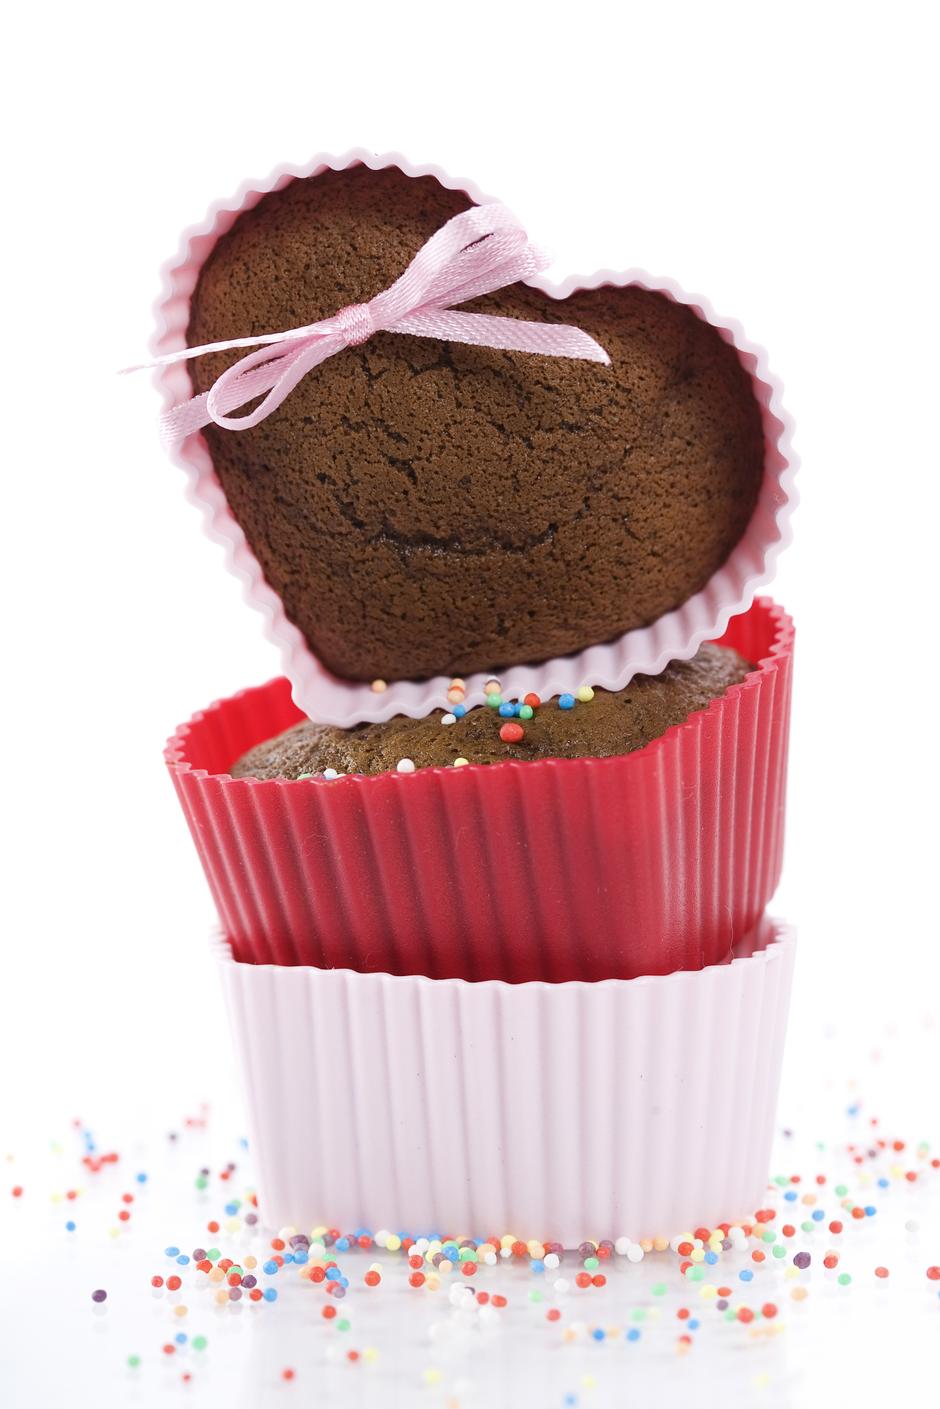 čokoladni muffini | Author: Thinkstock